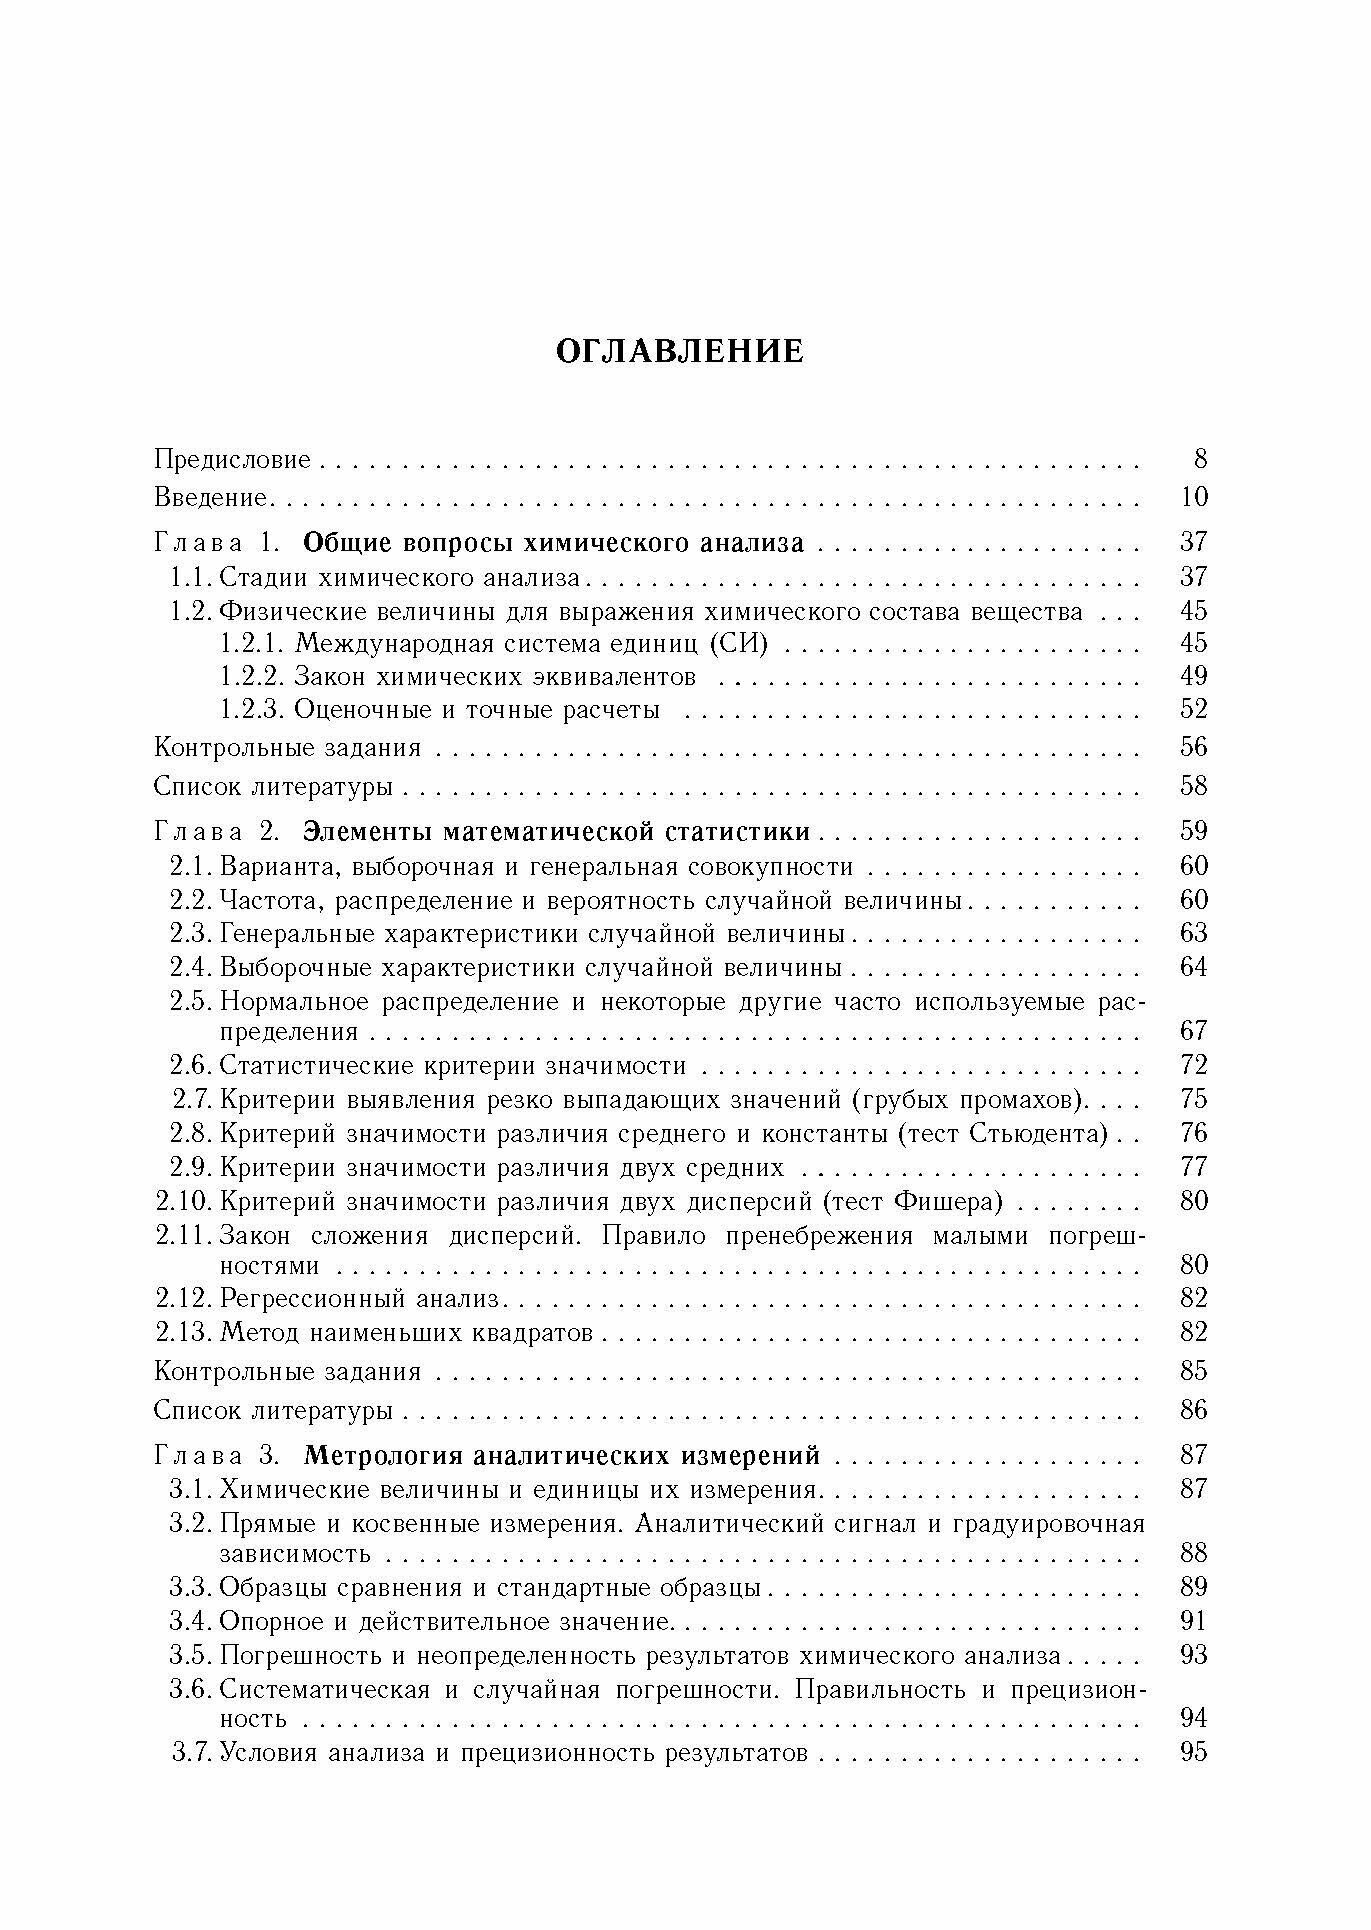 Аналитическая химия. В 3-х томах. Том 1. Химические методы анализа - фото №7